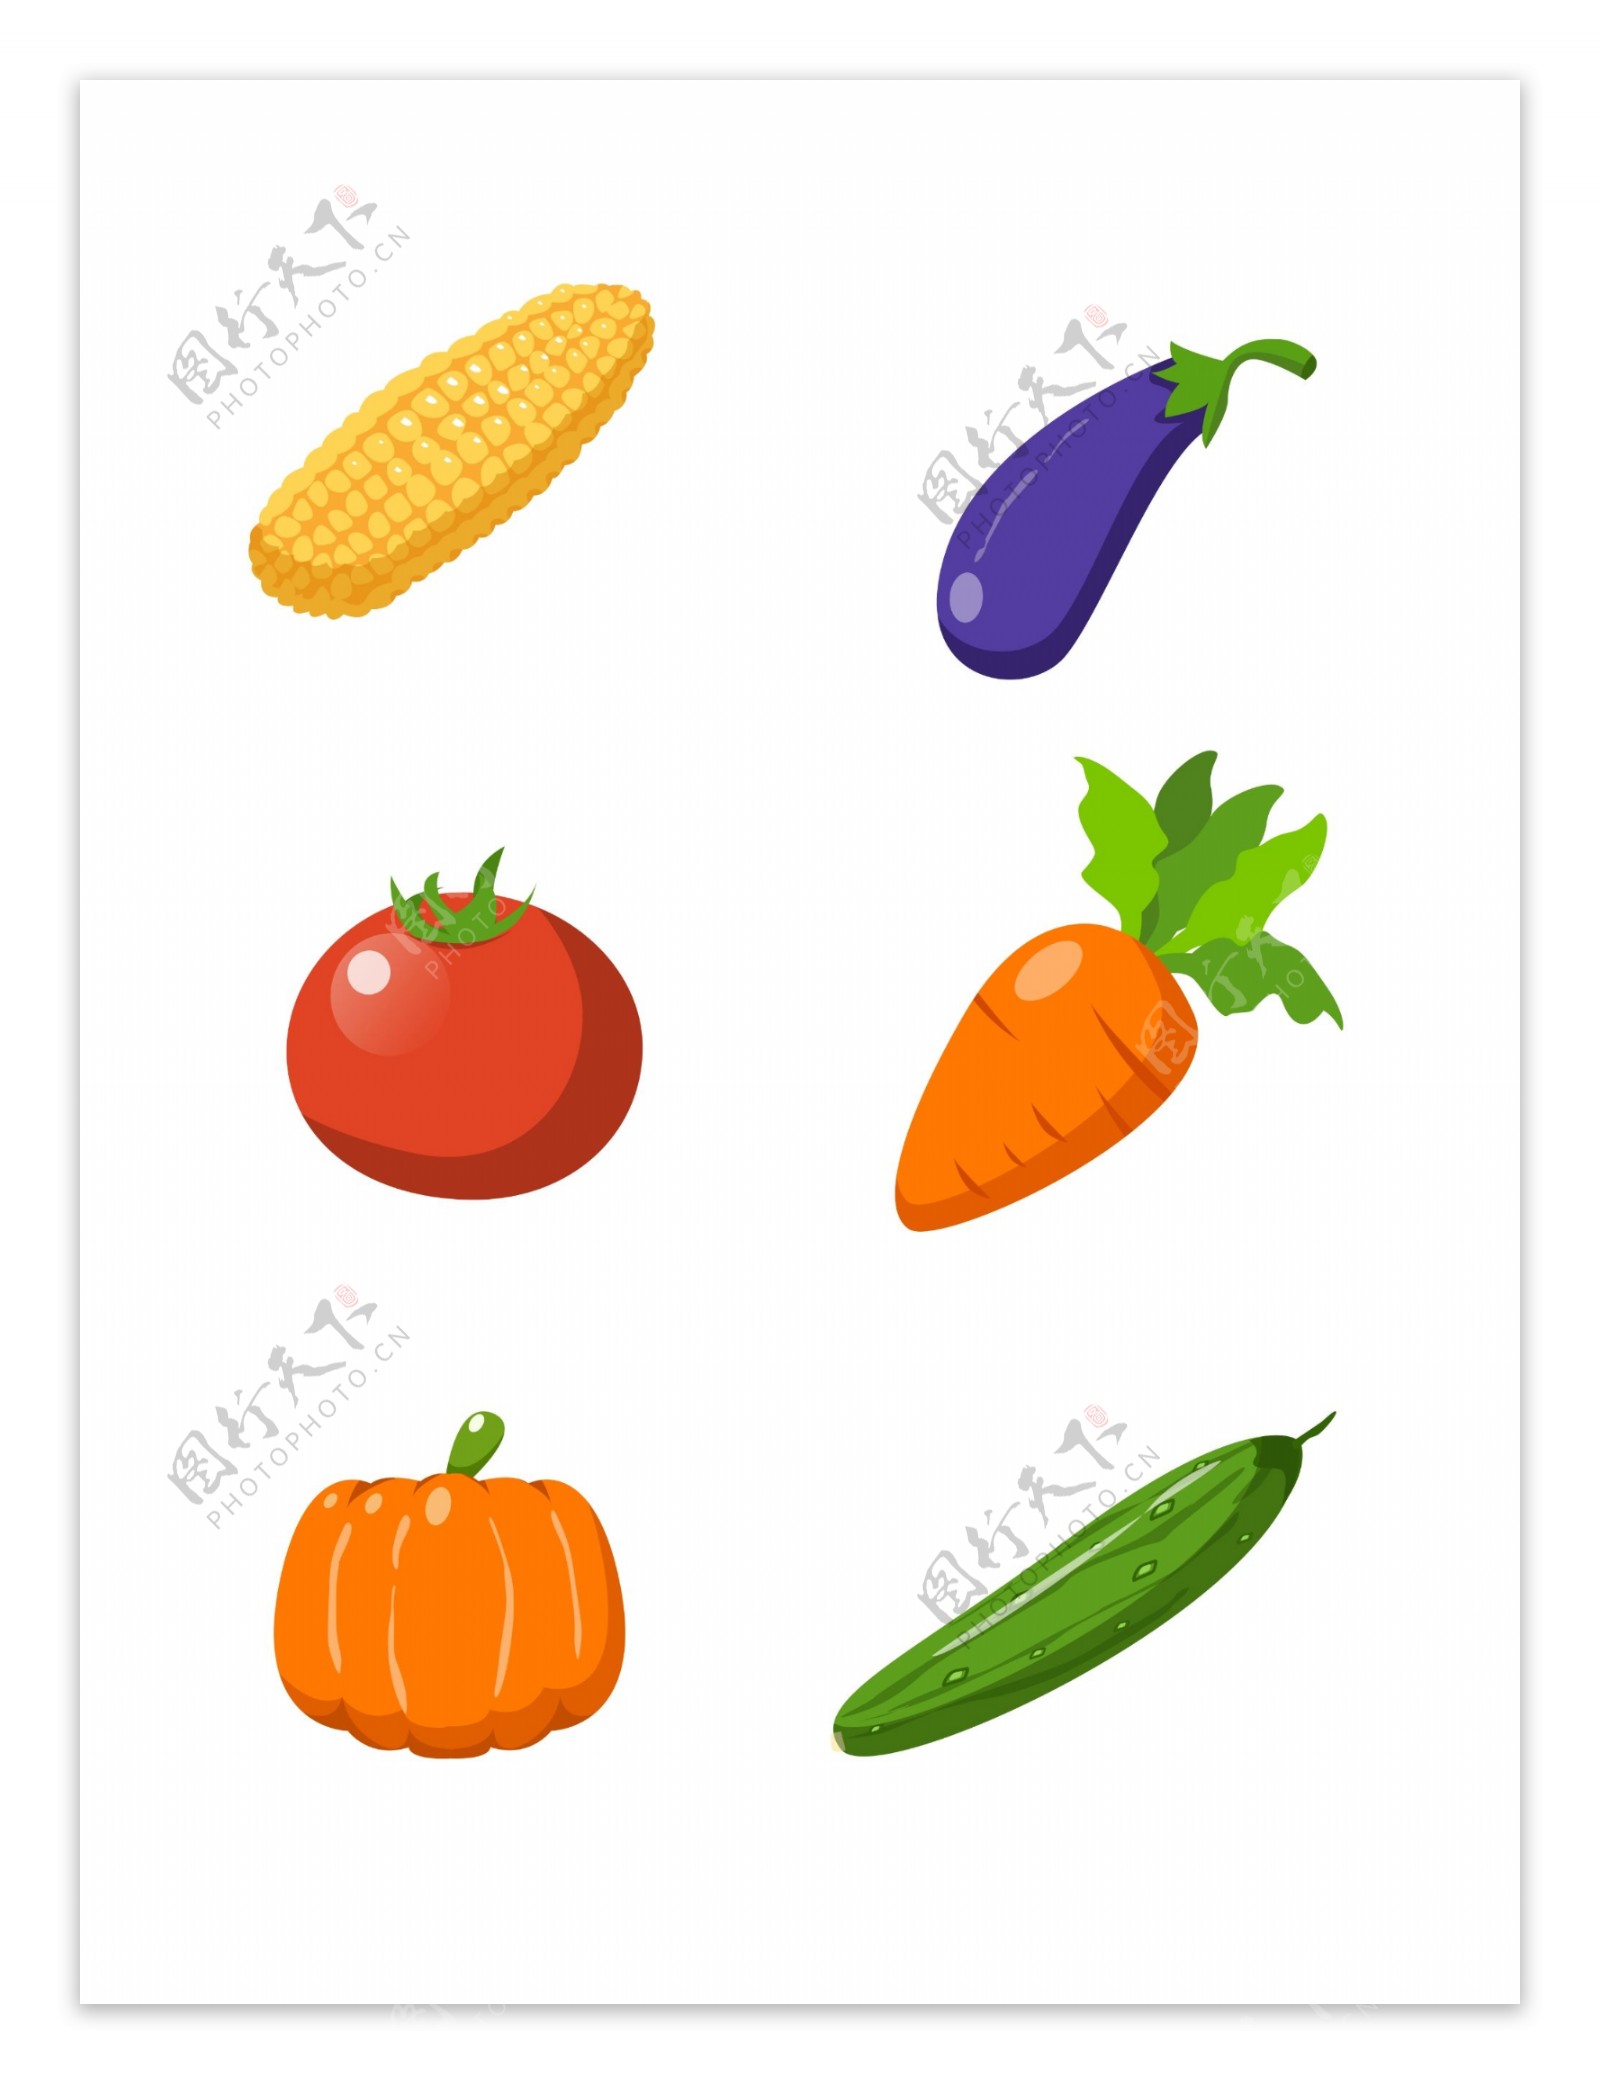 简约矢量手绘玉米番茄等蔬菜